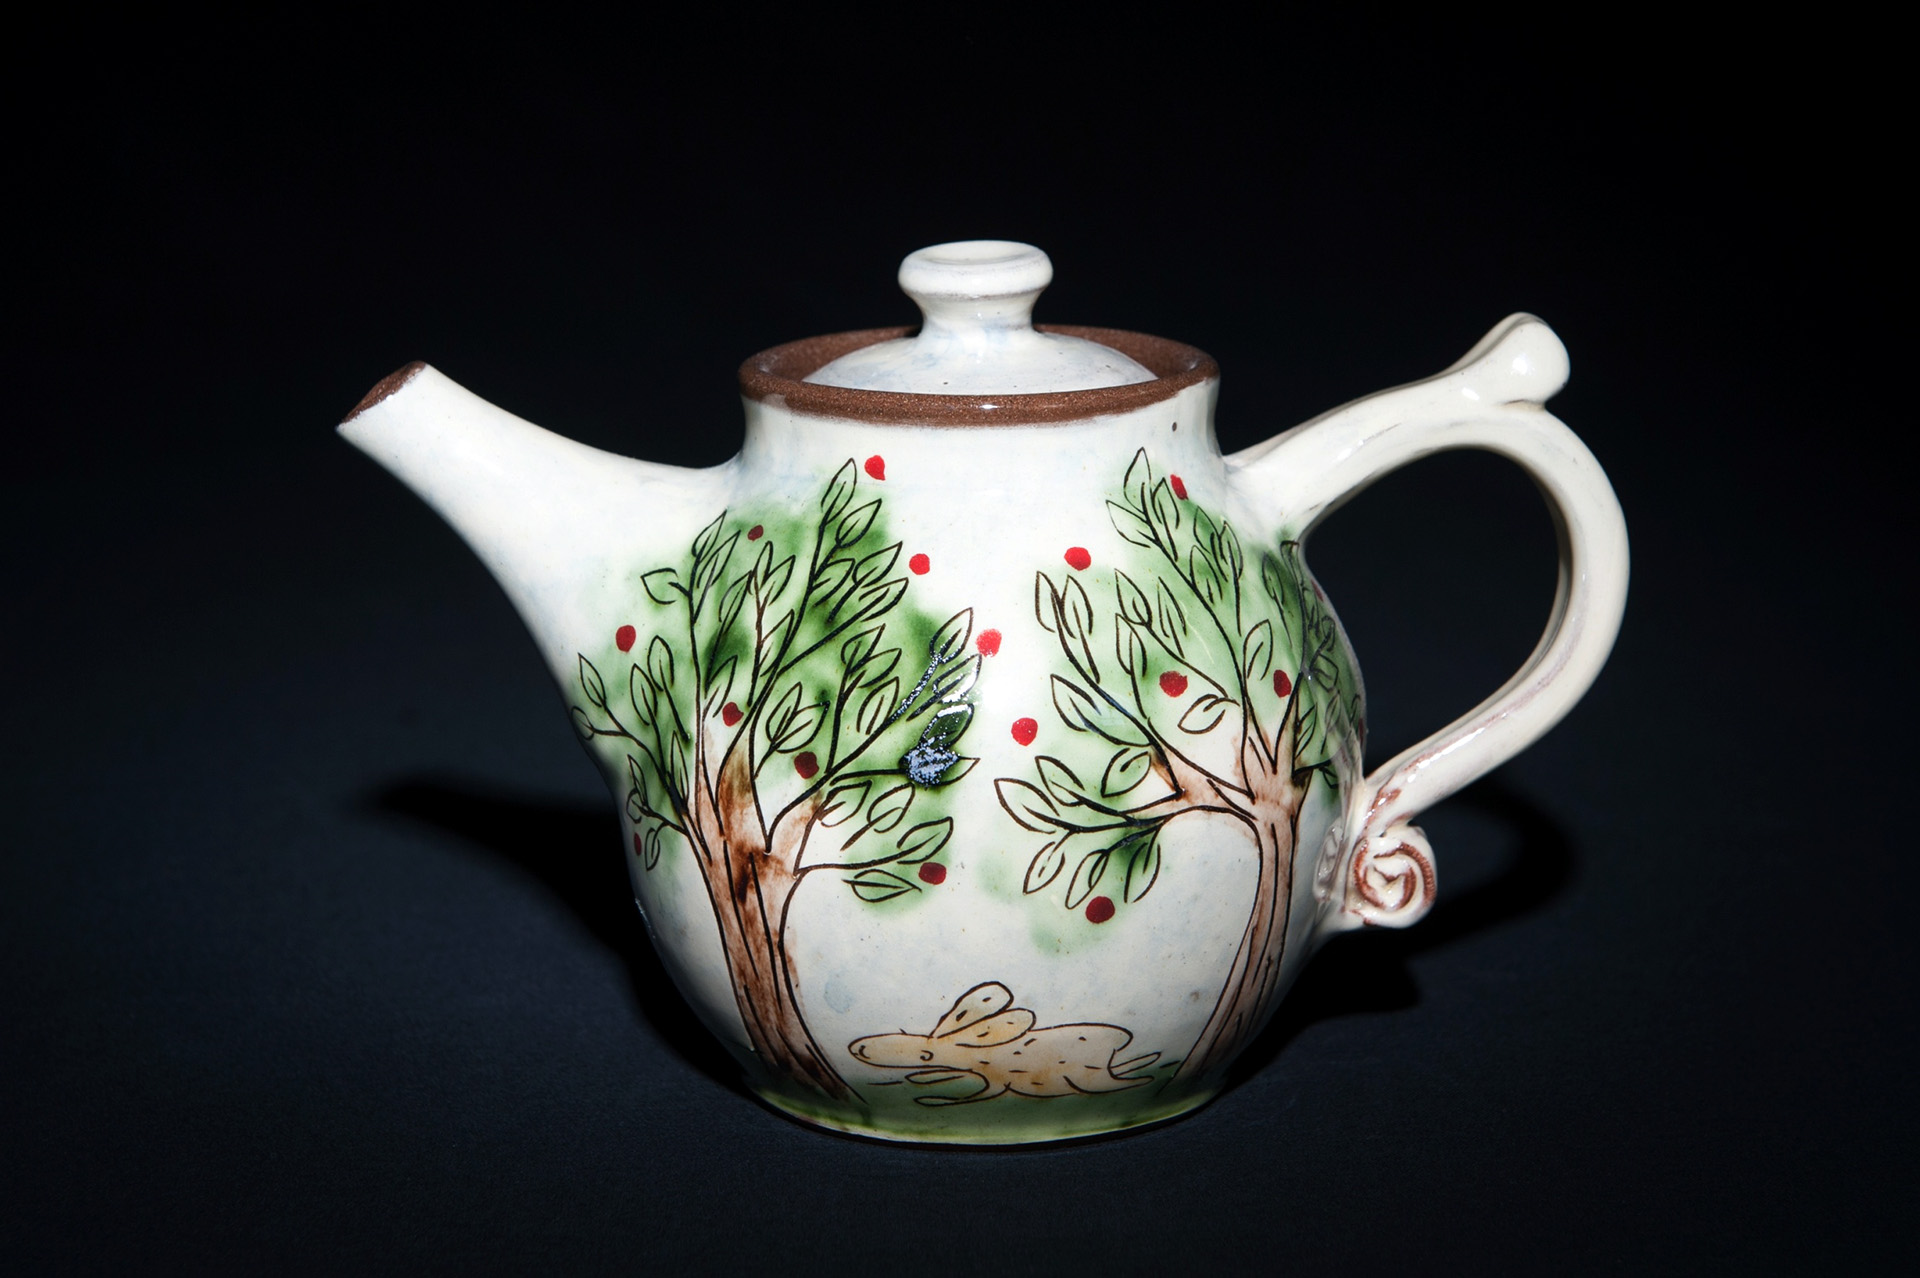 Rosemary Jacks Teapot